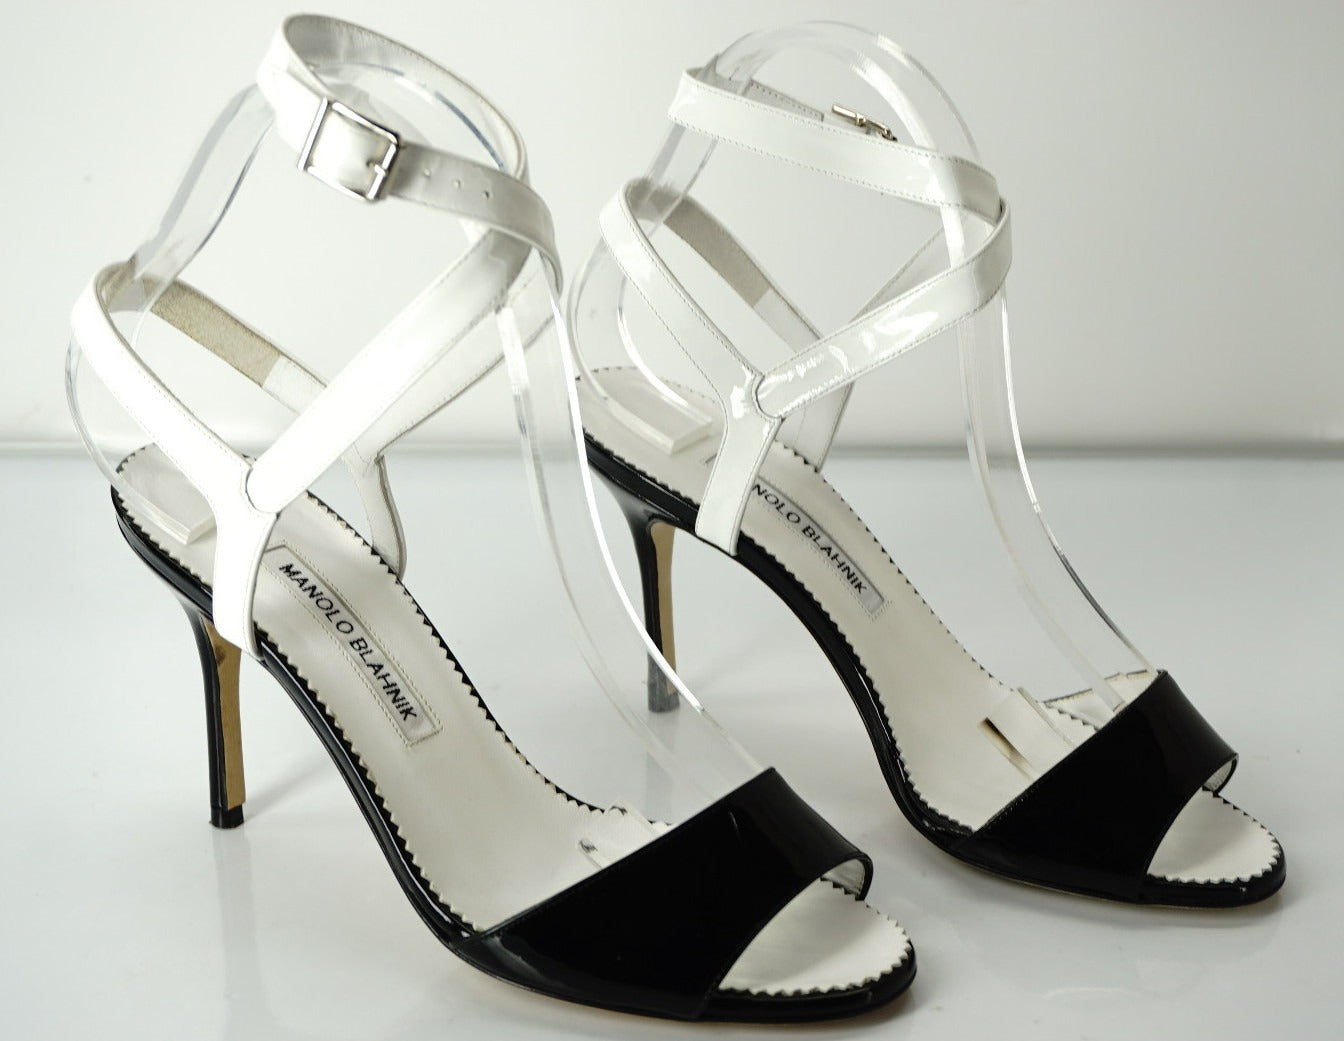 Manolo Blahnik Black White Patent Llonicabi Ankle Strap Sandals SZ 36.5 NIB $865